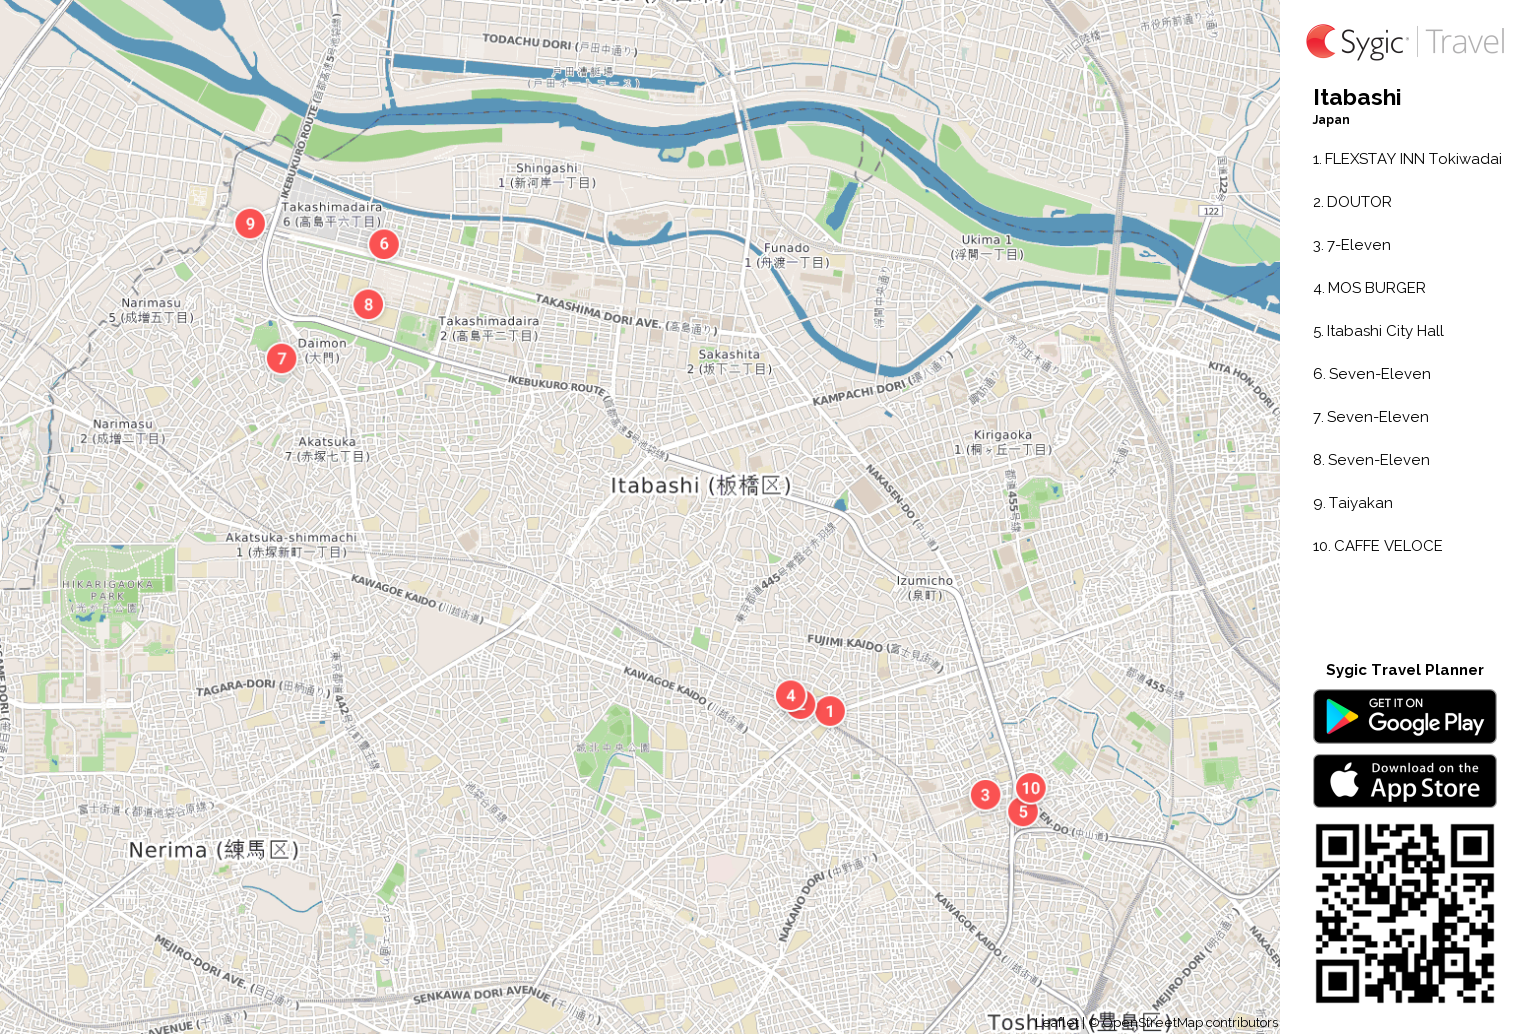 Itabashi Printable Tourist Map | Sygic Travel